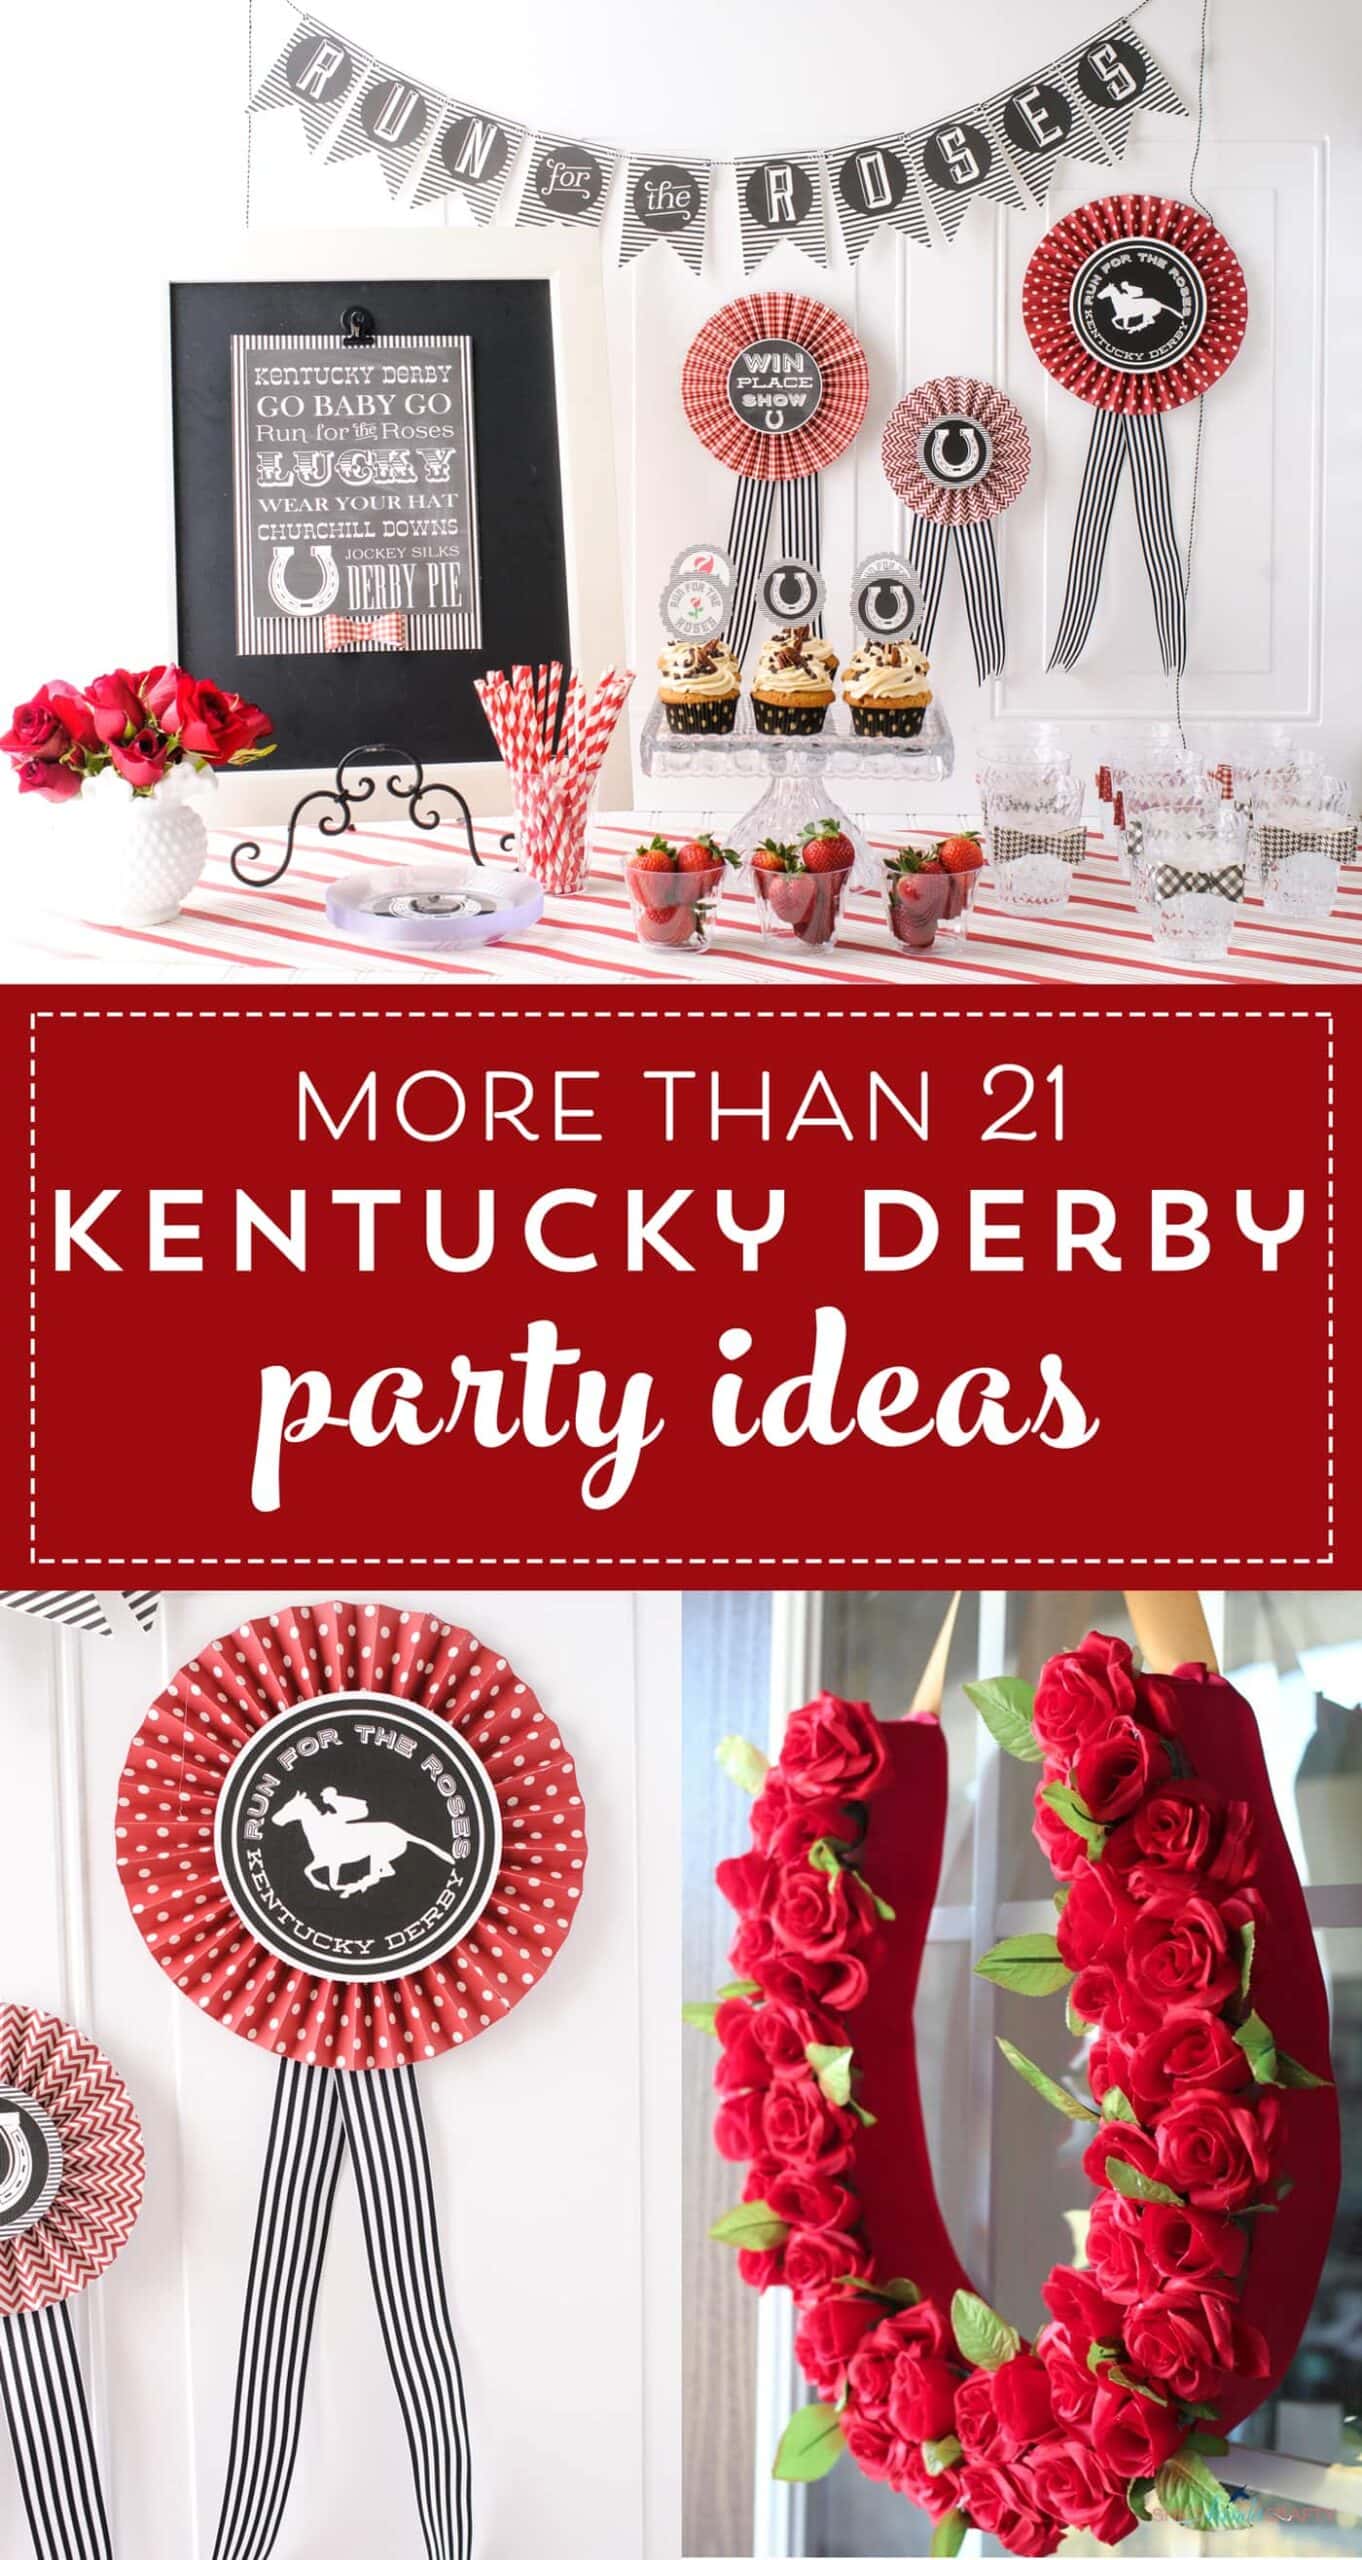 21 Adorable Kentucky Derby Party Ideas The Polka Dot Chair